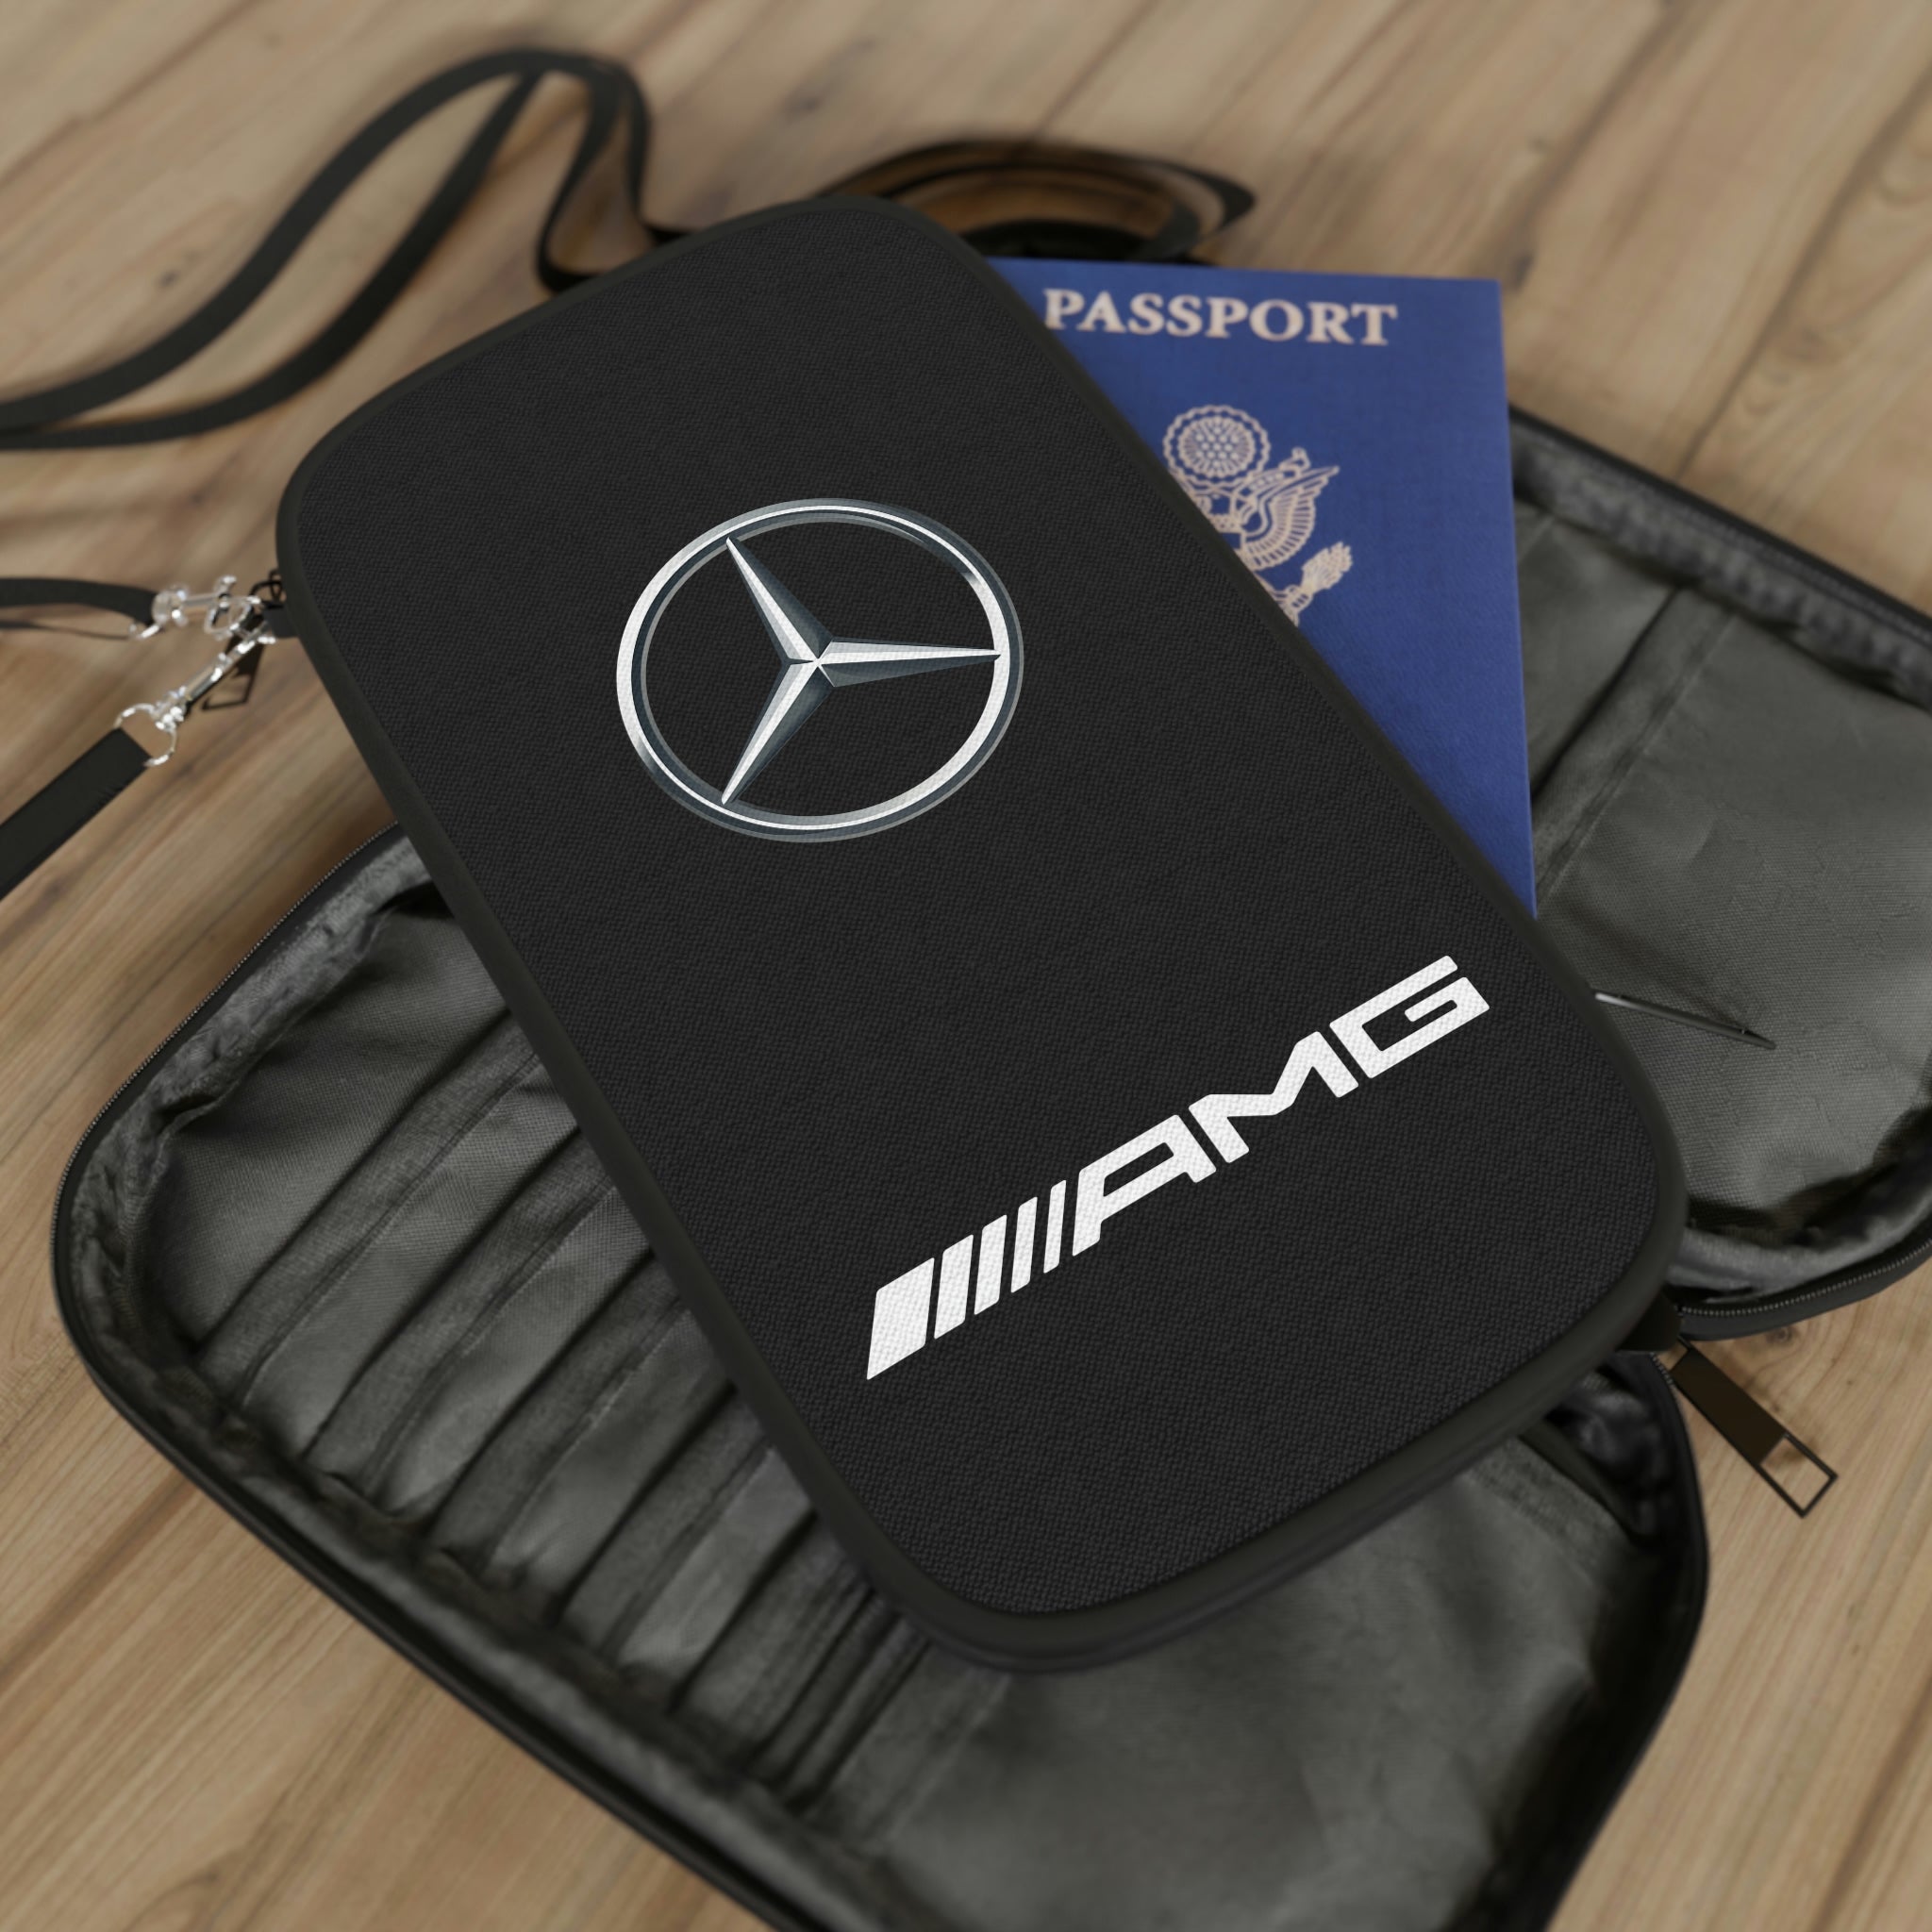 Mercedes Benz, Bags, Wallet Passport Trave Mercedesbenz